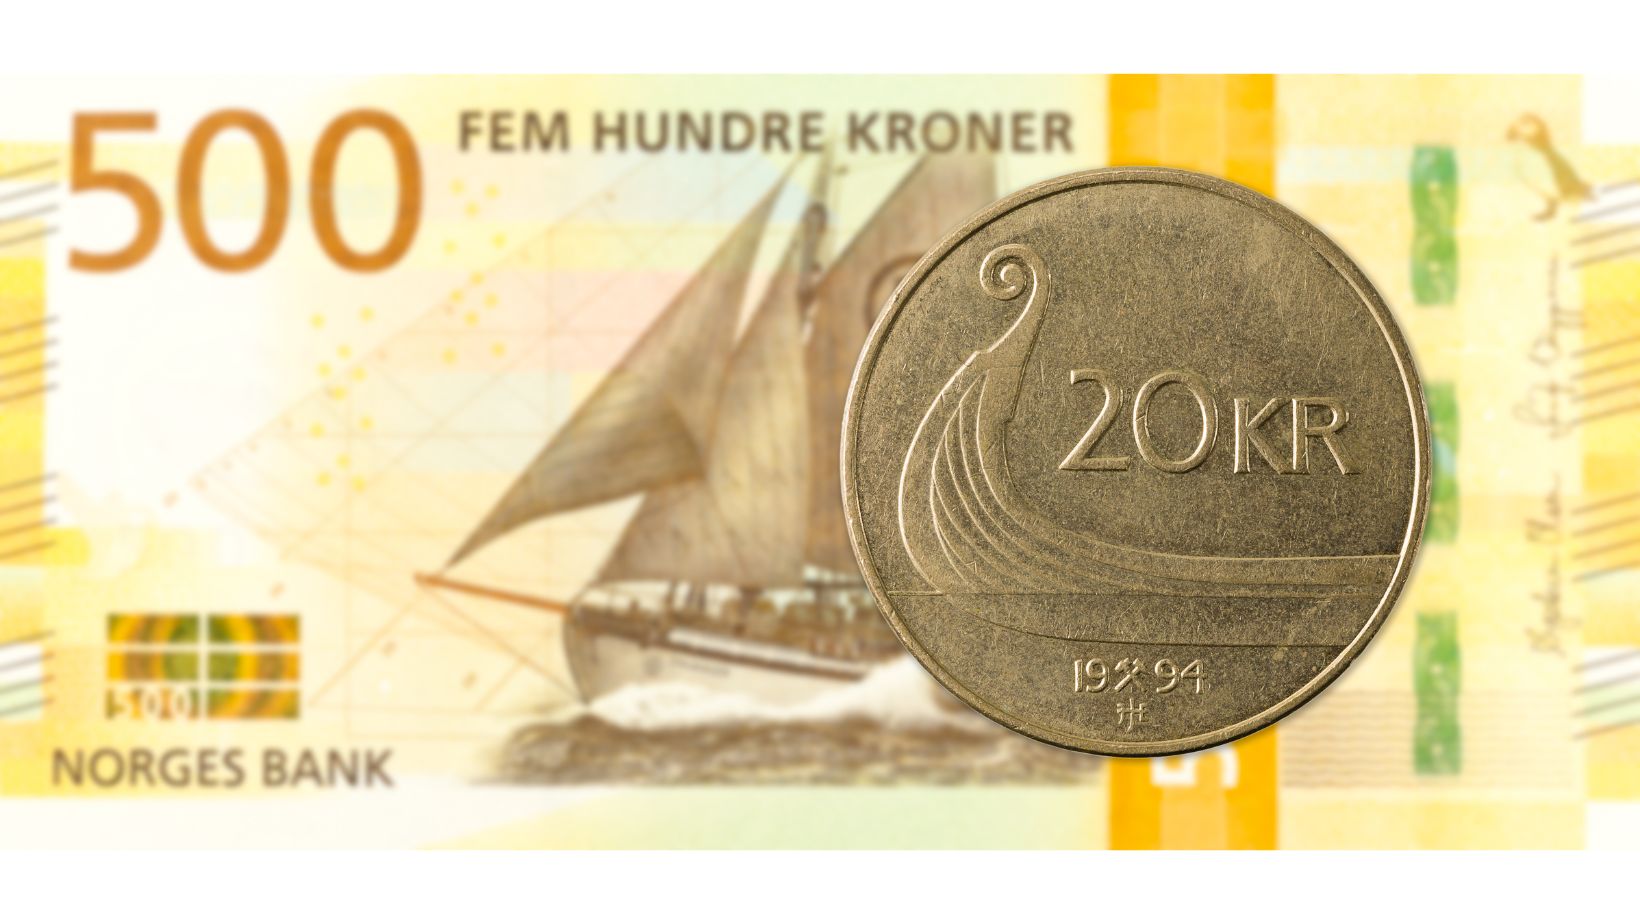 Bankbiljet van 500 NOK en muntstuk van 20 NOK